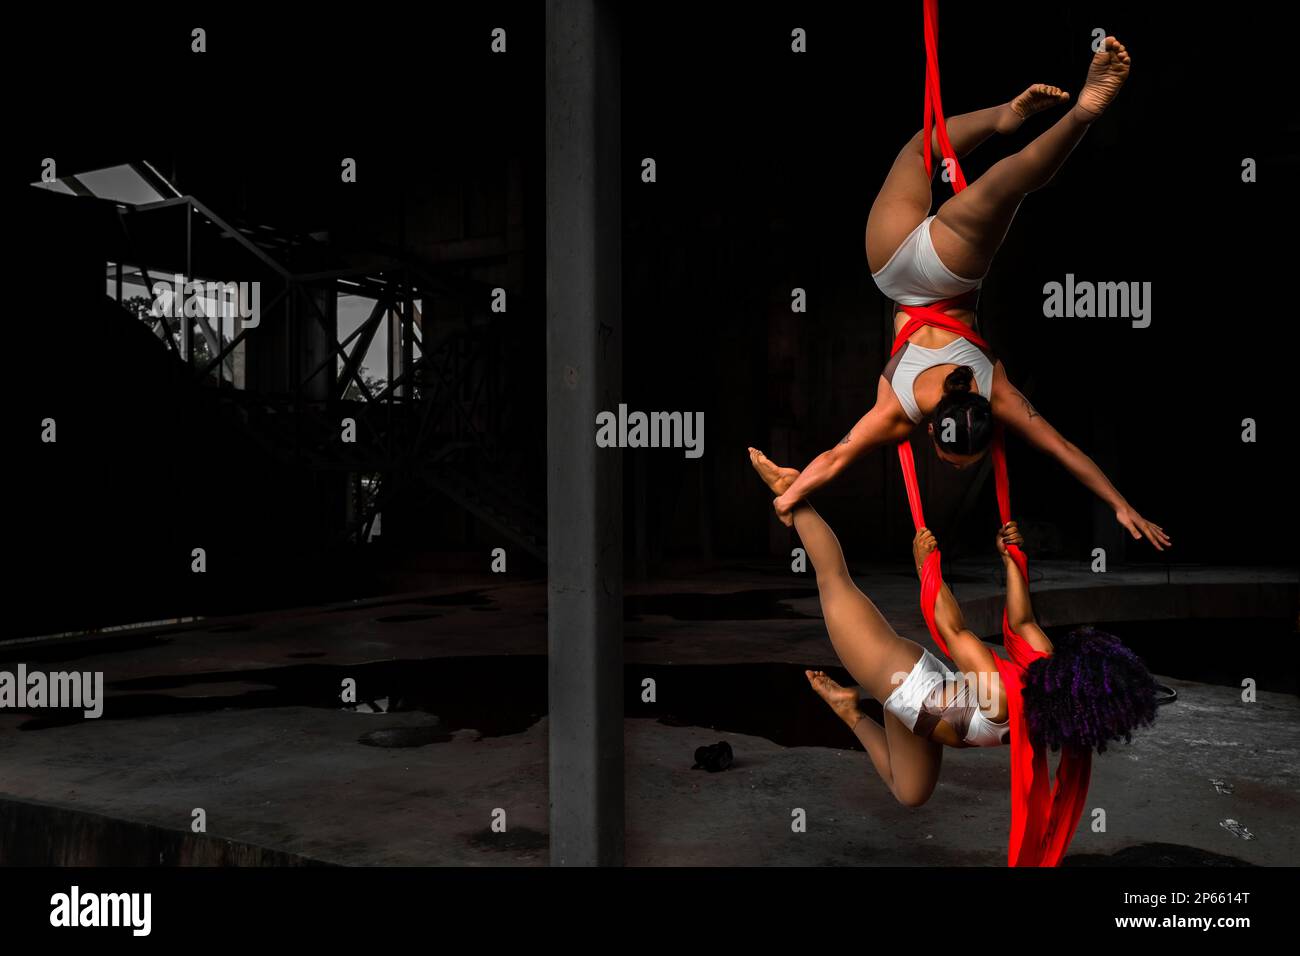 Shara Guzman e Mariale Contreras, ballerini aerei venezuelani, eseguono un duo in sete aeree durante una performance artistica a Barranquilla, Colombia. Foto Stock